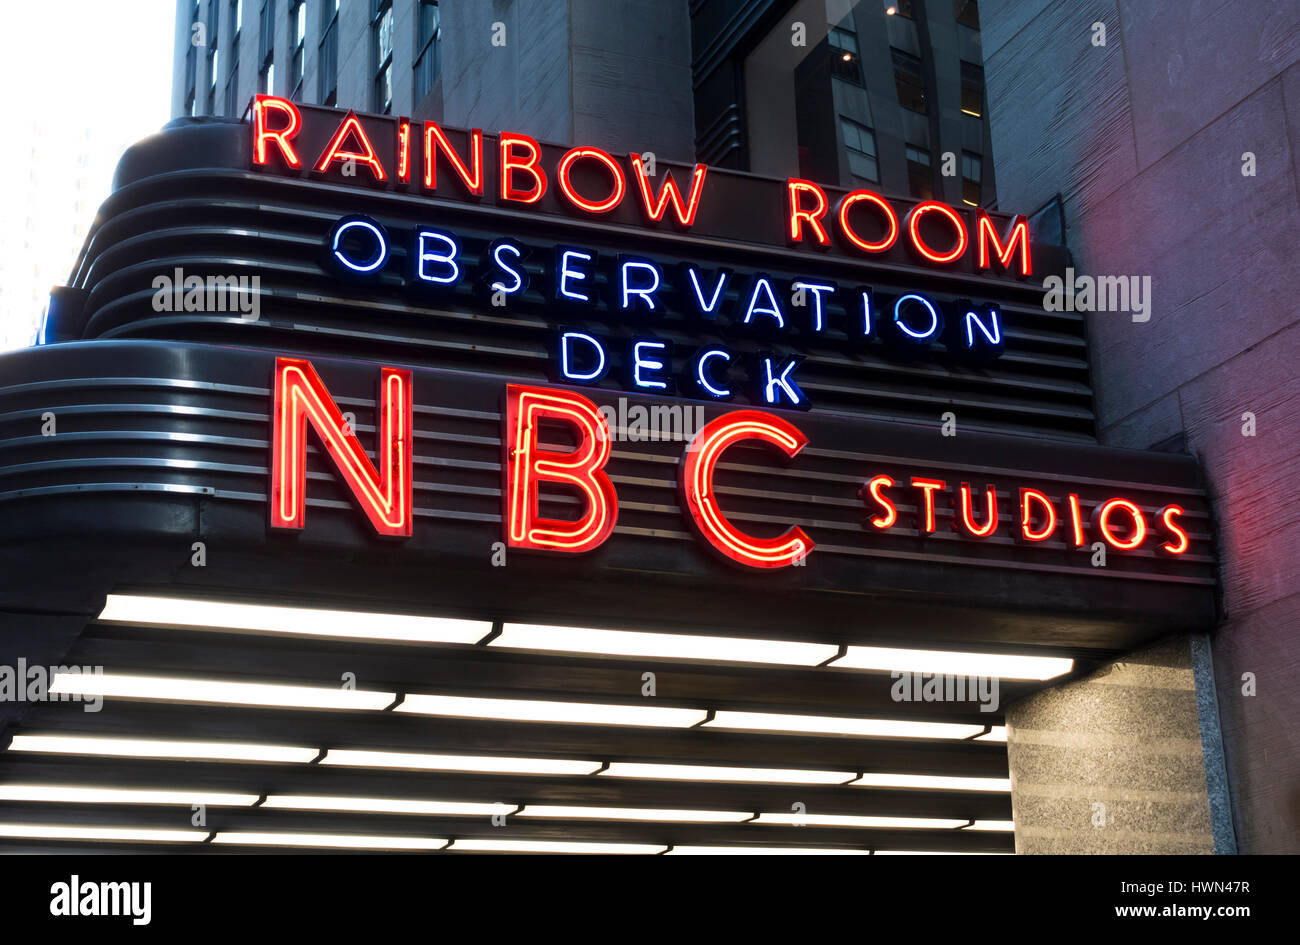 NBC Studios Gebäude Festzelt zeigt den Eingang des Rainbow Room und Aussichtsplattform Stockfoto